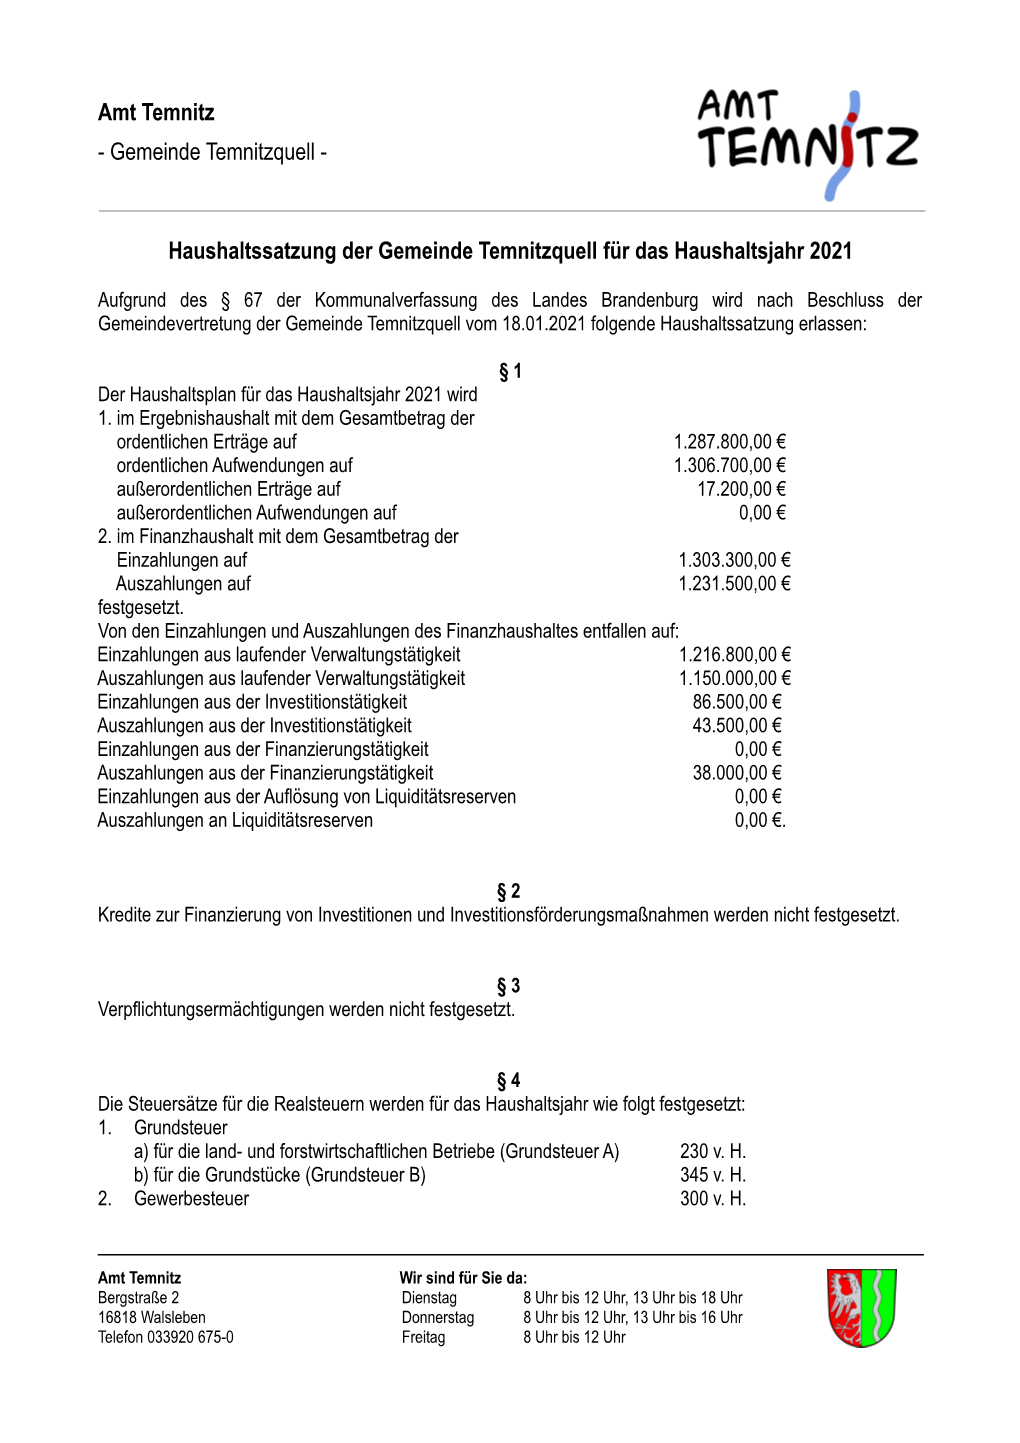 Haushaltssatzung Für Die Gemeinde Temnitzquell 2021